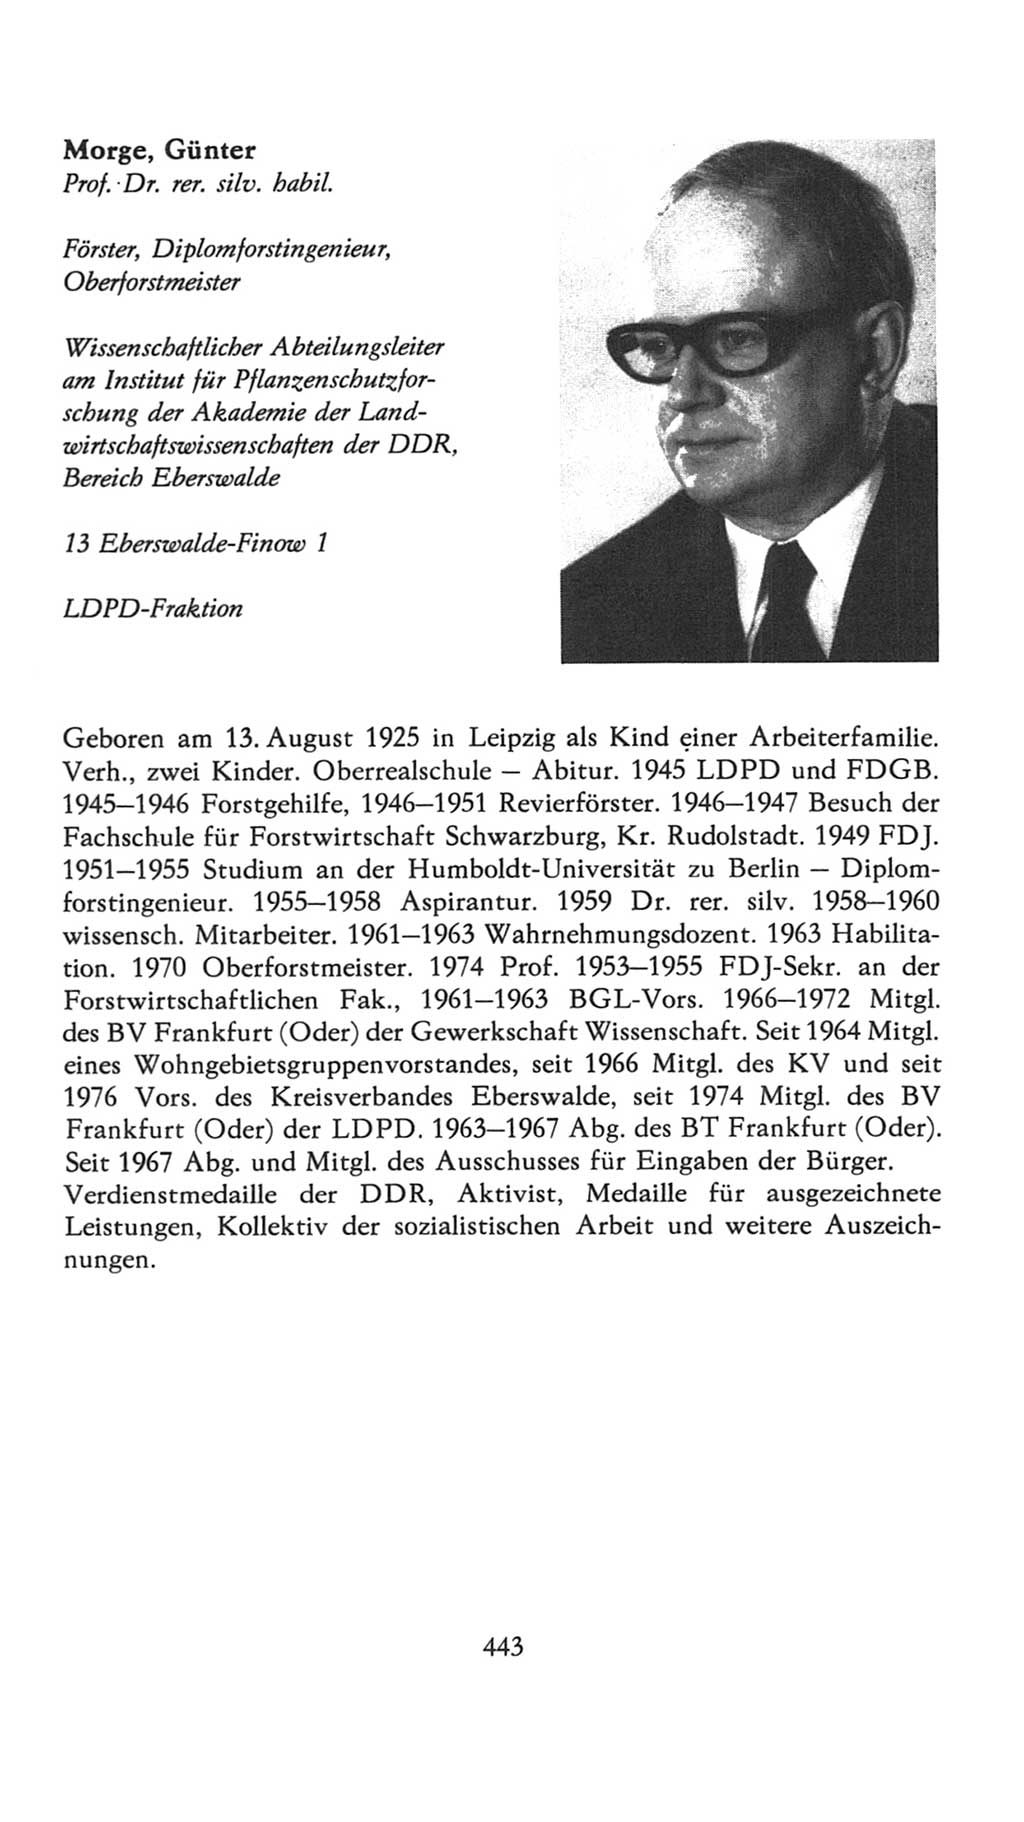 Volkskammer (VK) der Deutschen Demokratischen Republik (DDR), 7. Wahlperiode 1976-1981, Seite 443 (VK. DDR 7. WP. 1976-1981, S. 443)